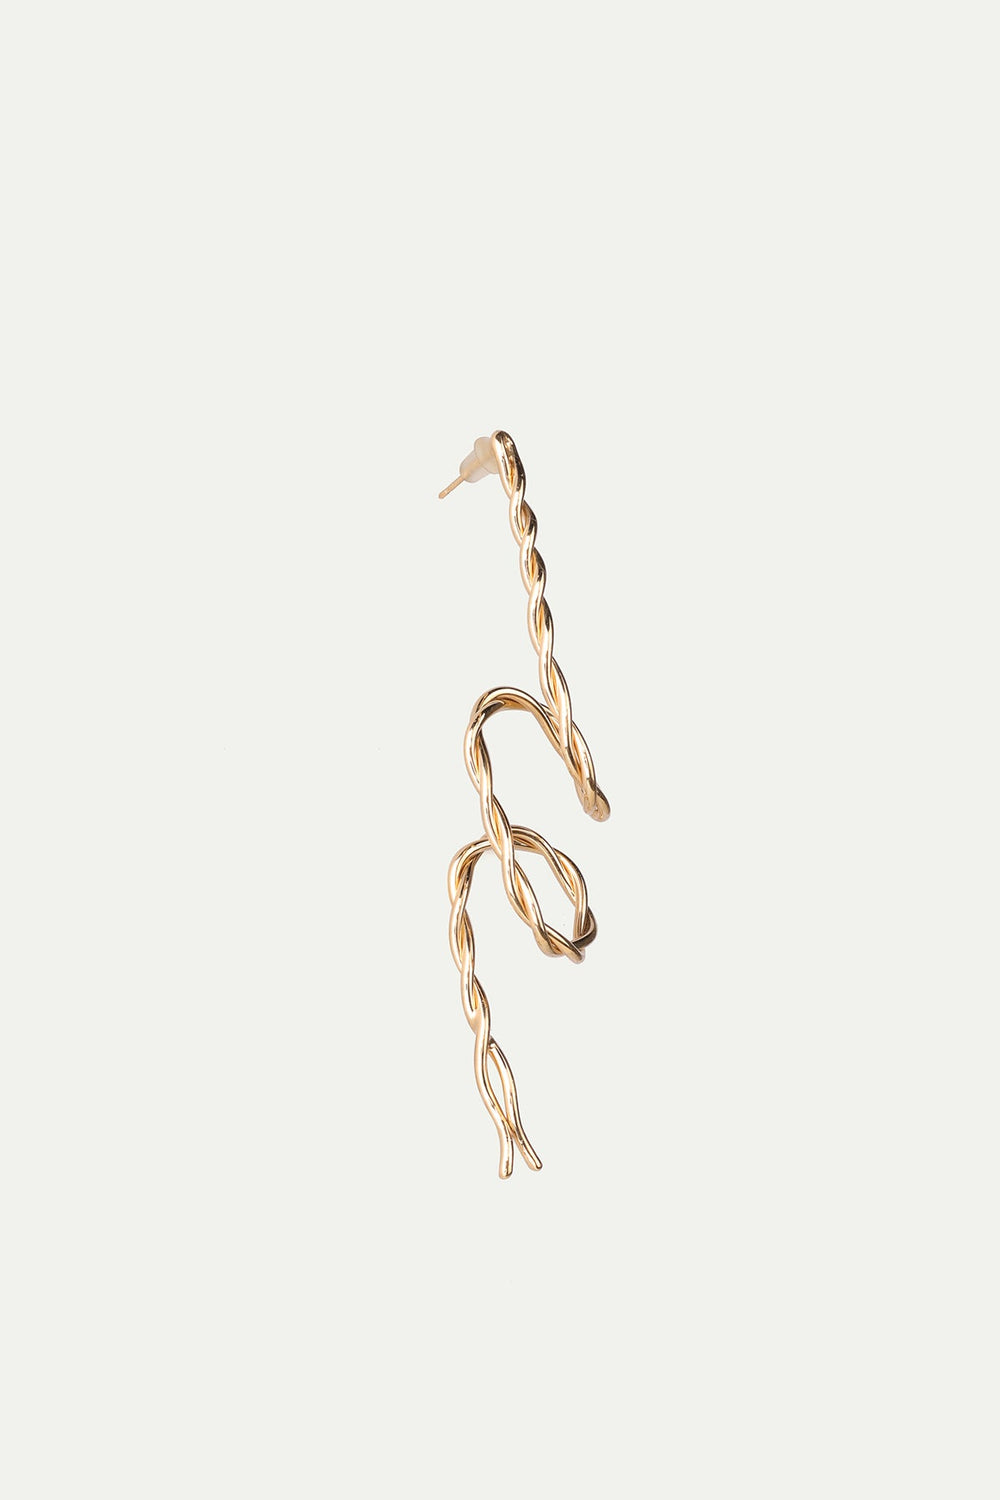 עגיל פירסינג בודד מלופף בצבע זהב - Noritamy